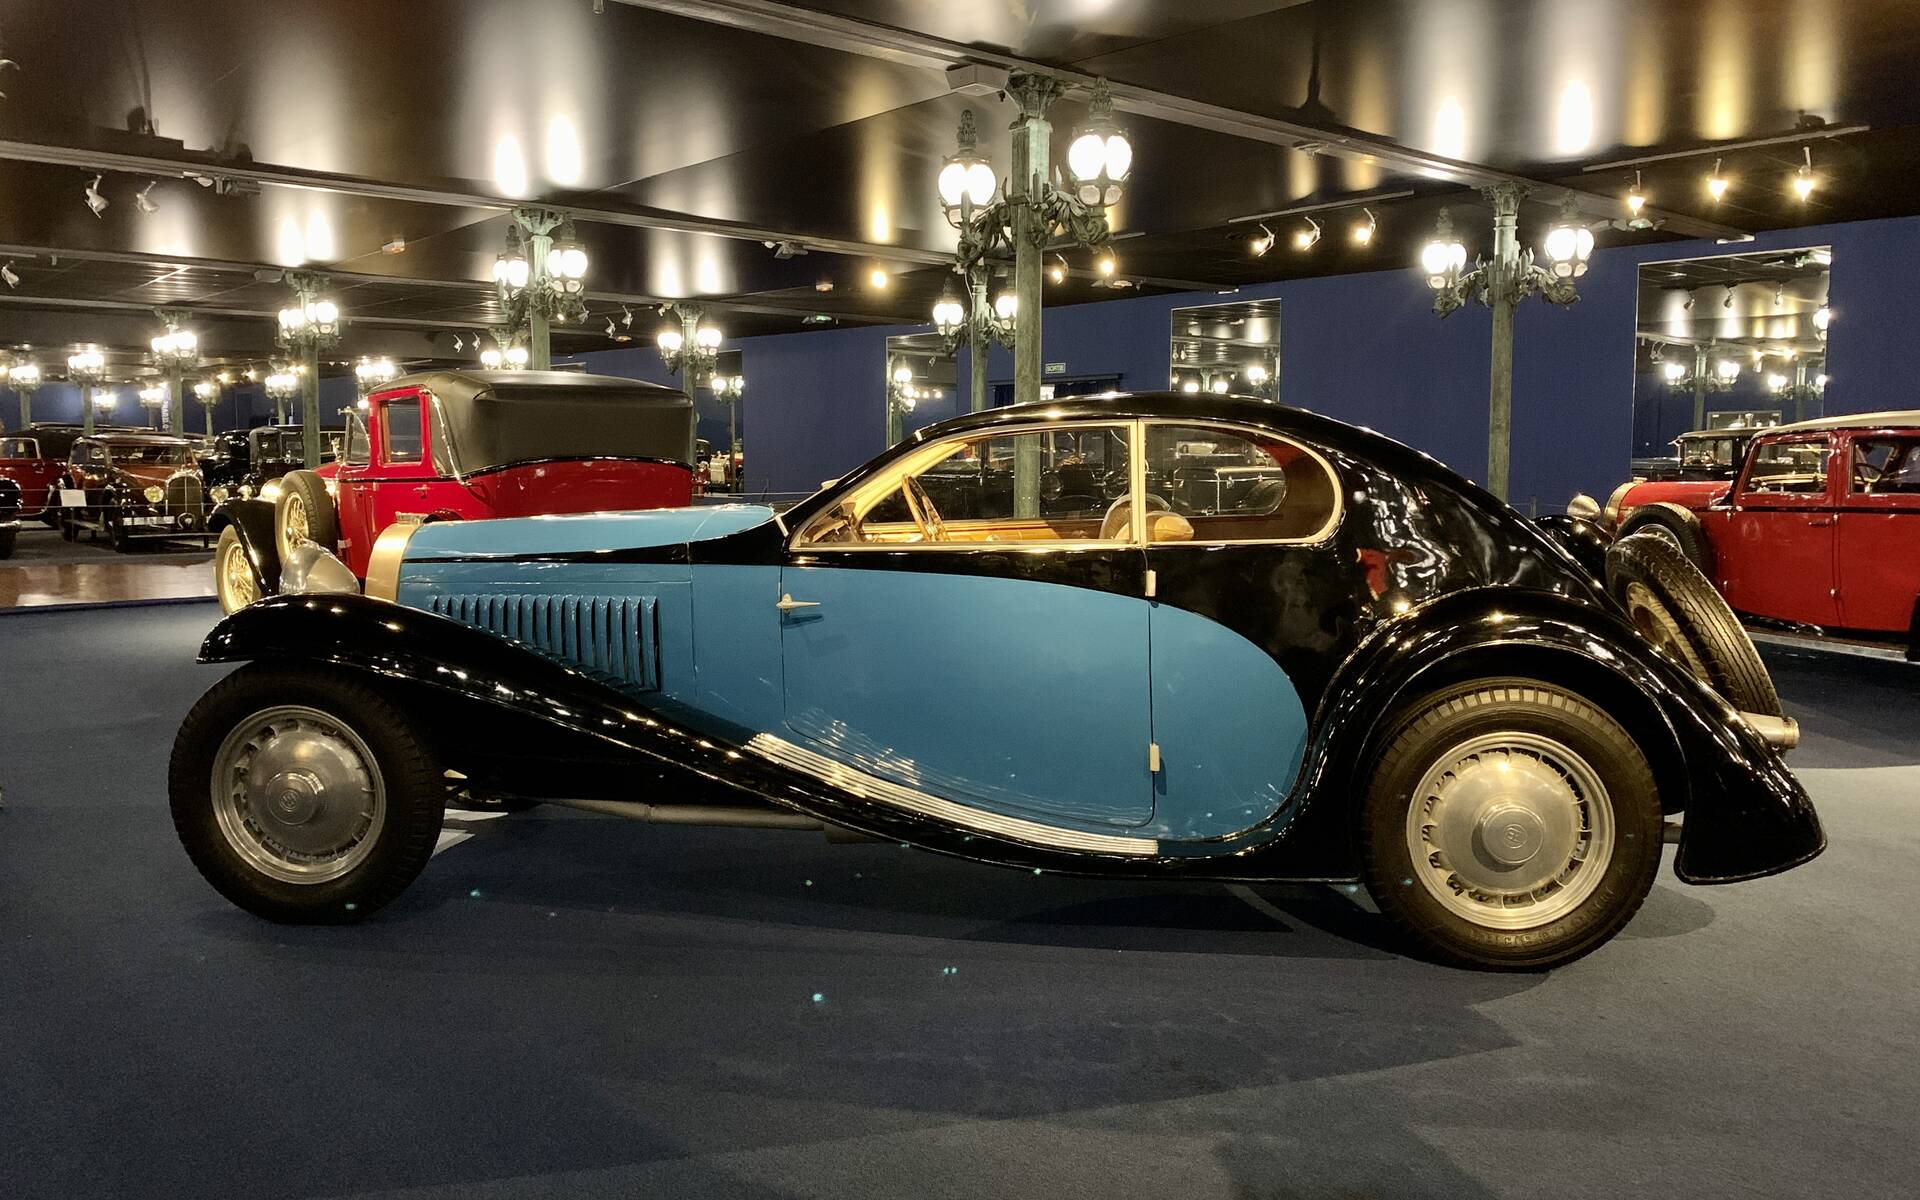 En photos : une centaine de Bugatti réunies dans un même musée 503094-en-photos-des-dizaines-de-bugatti-reunies-dans-un-meme-musee